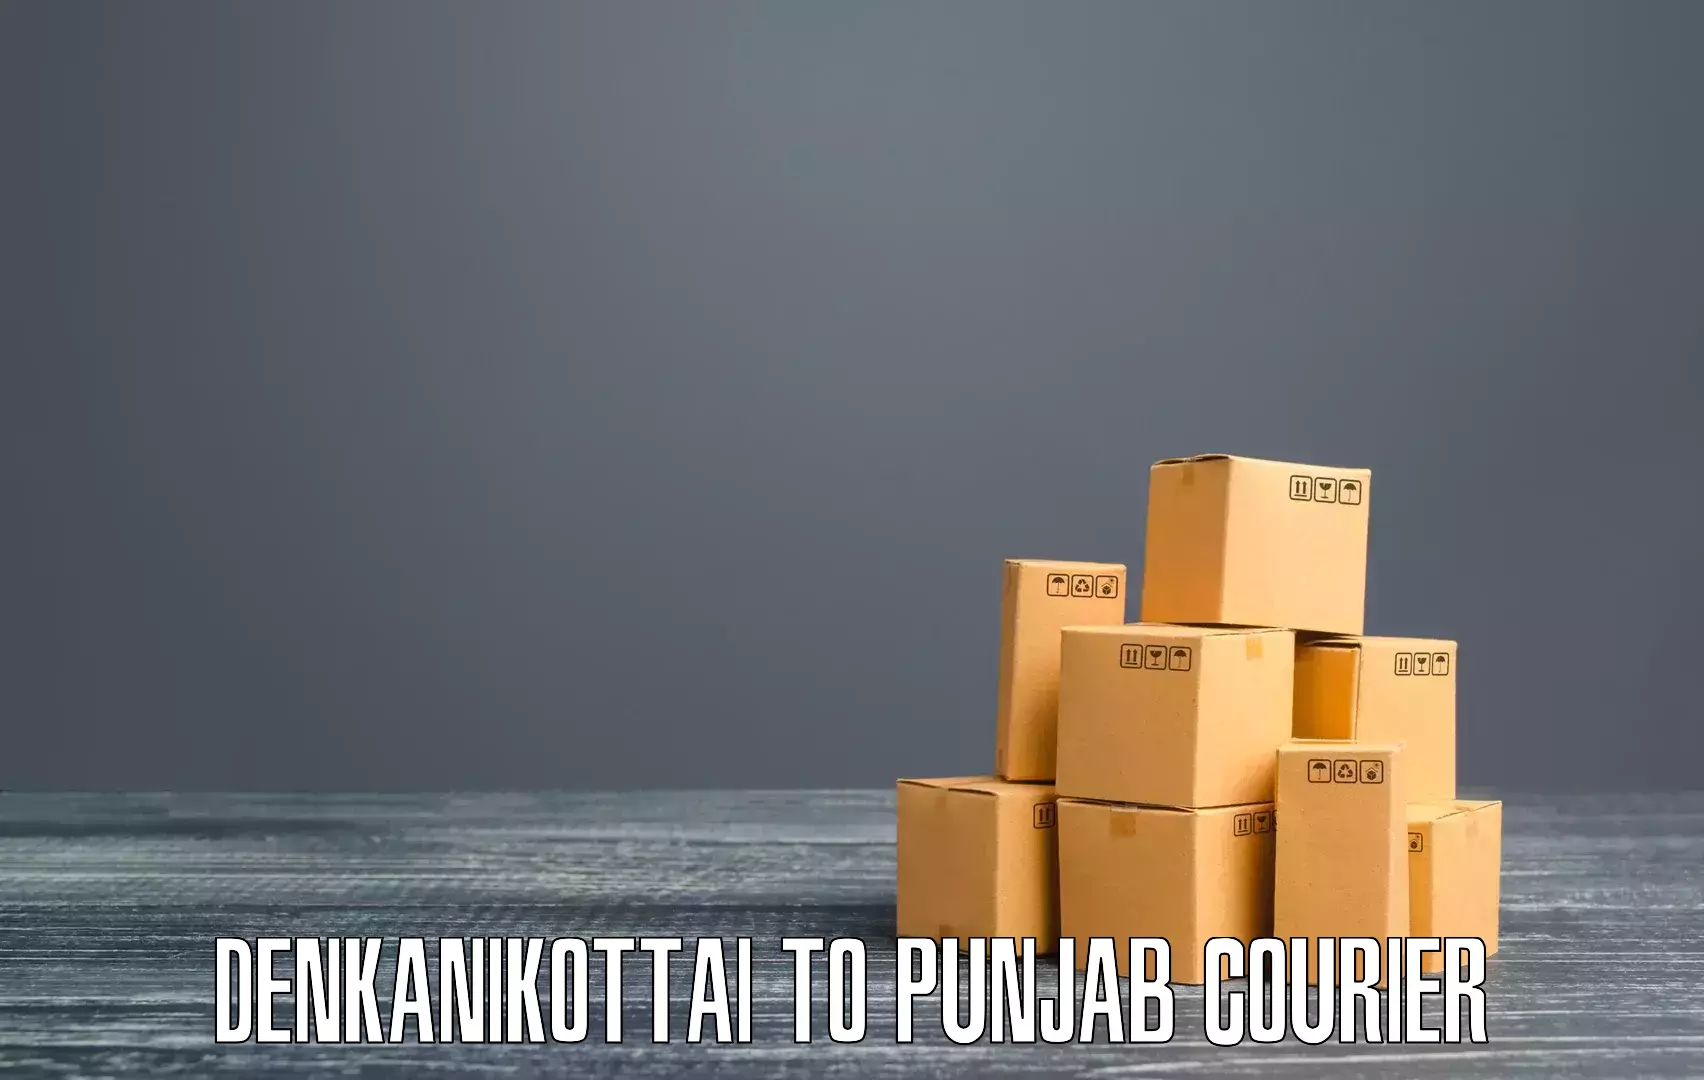 High-efficiency logistics Denkanikottai to Garhshankar